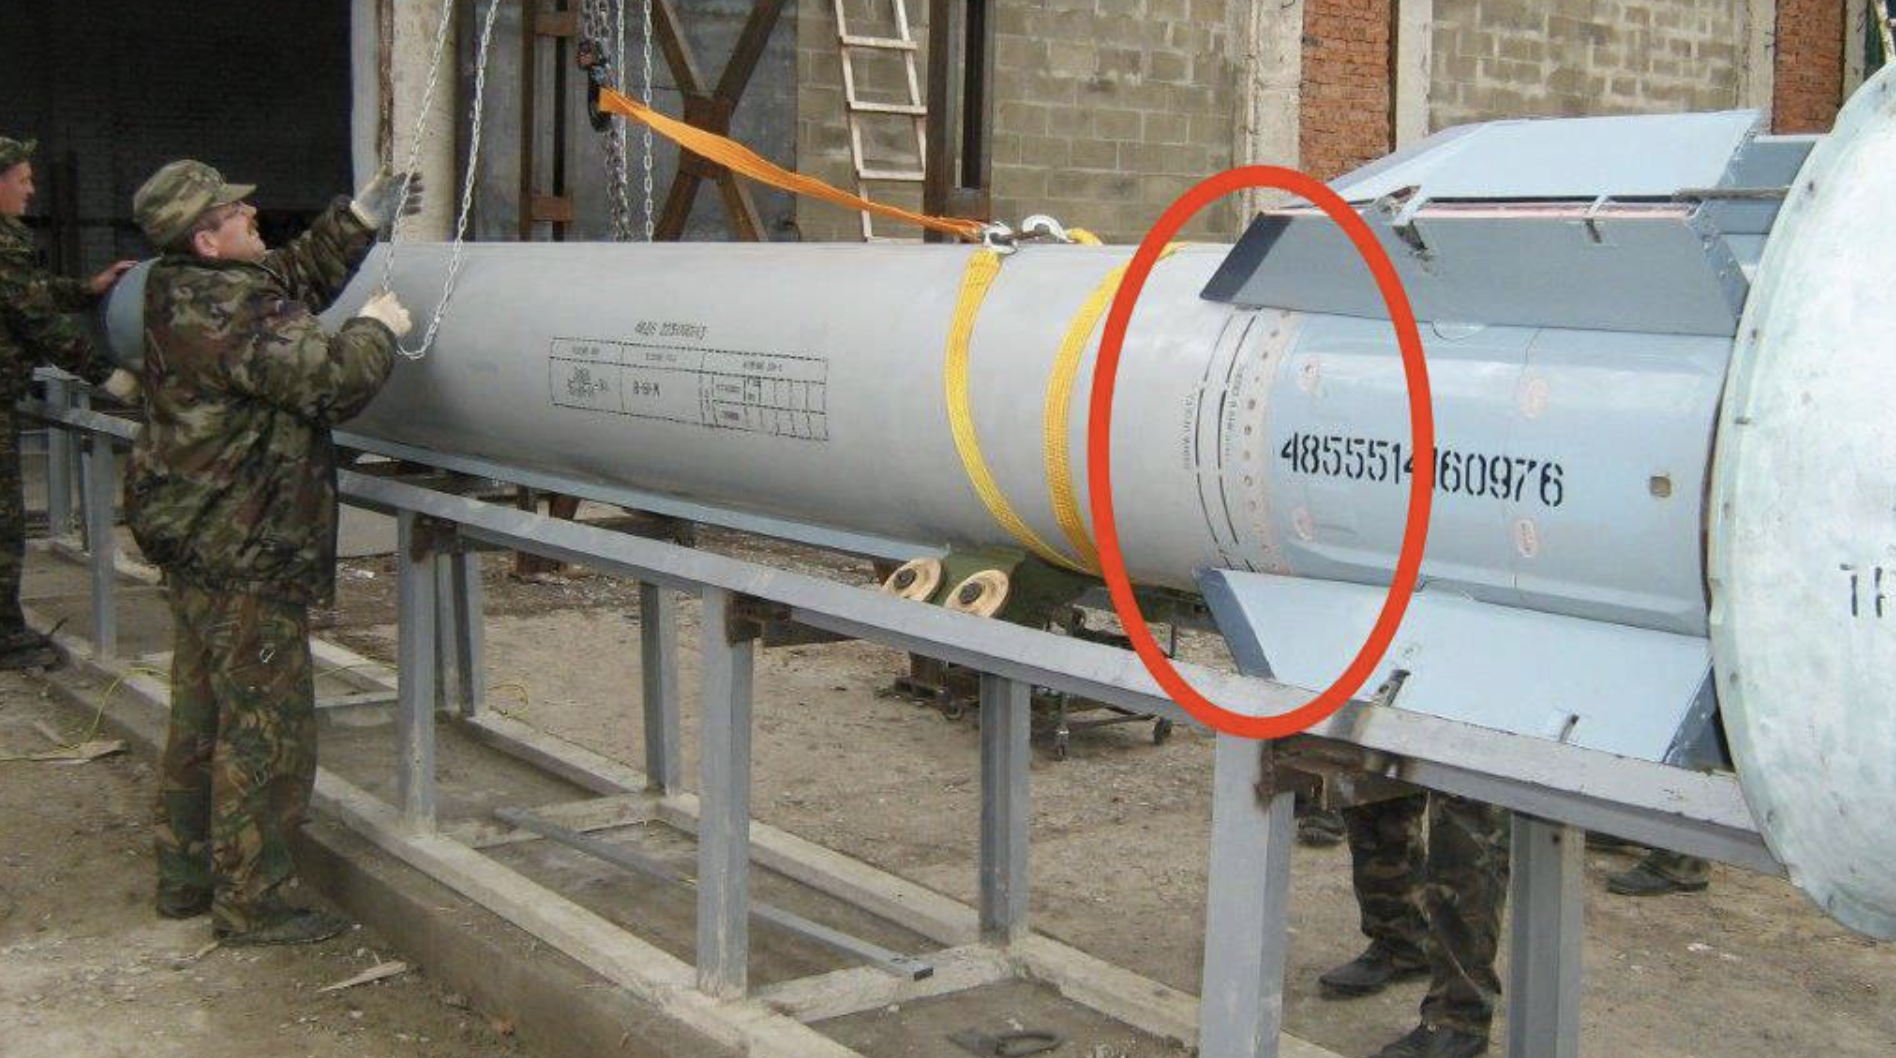 Η Ουάσινγκτον επιμένει ότι ο πύραυλος που έπεσε στην Πολωνία είναι ουκρανικός και ο Ζελένσκι το αμφισβητεί